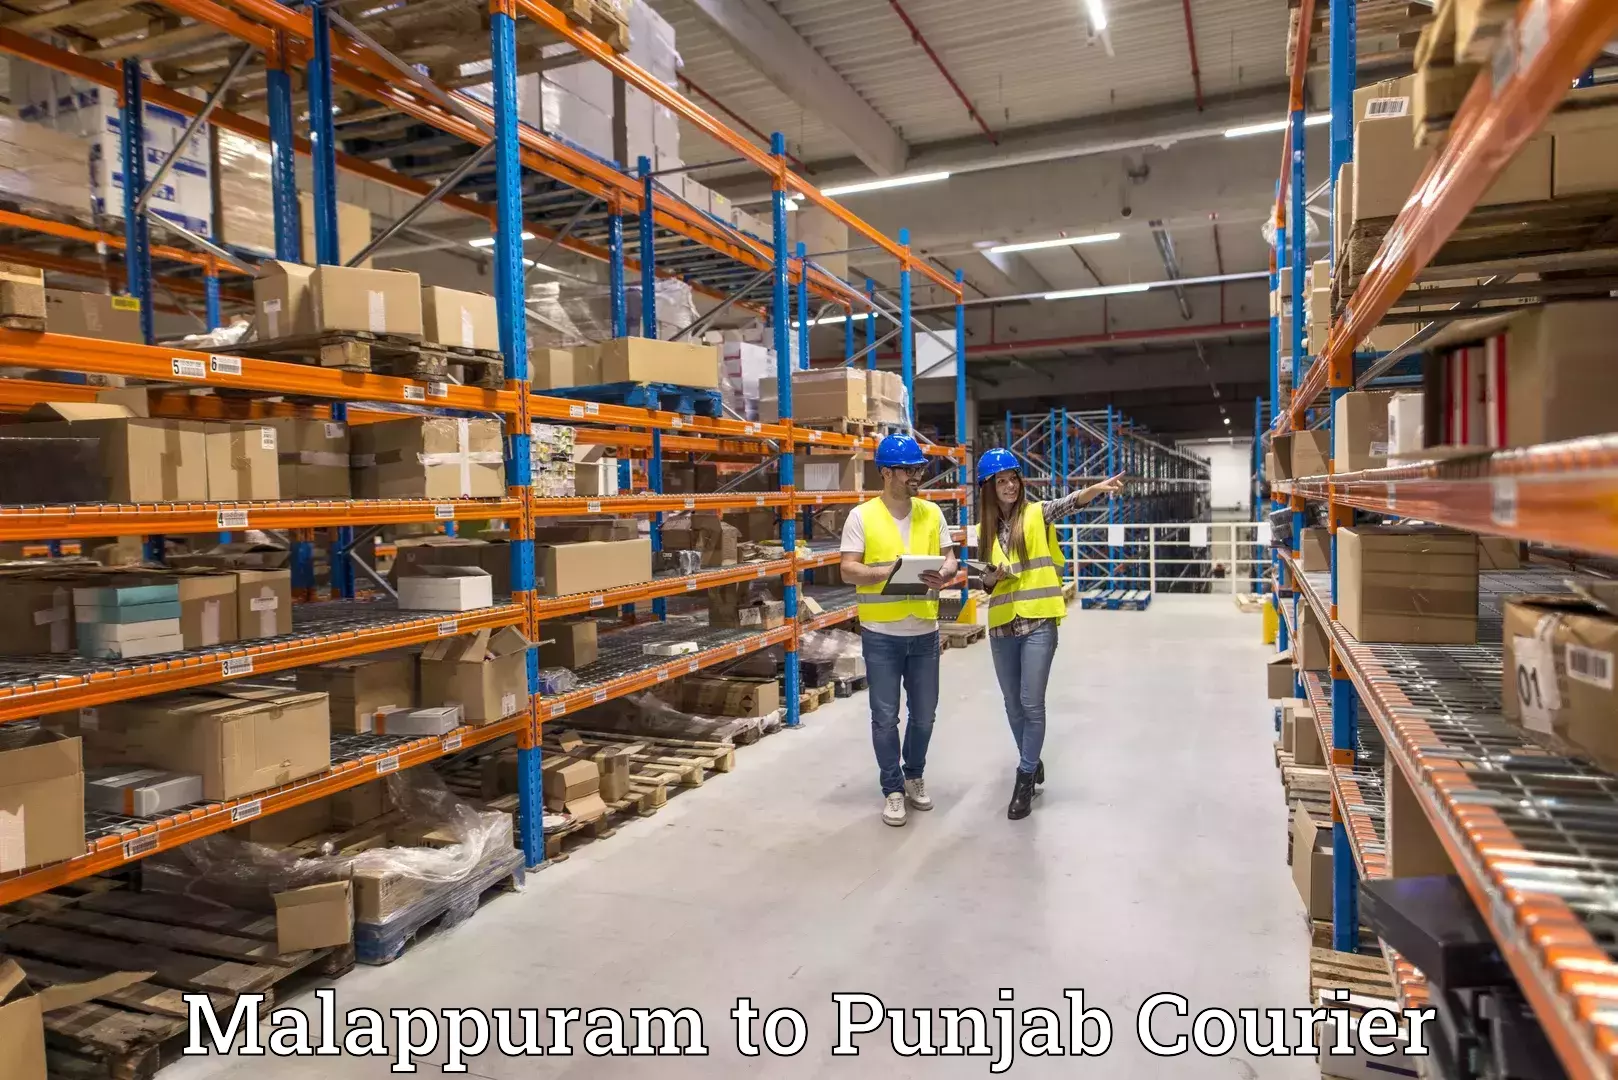 Courier insurance Malappuram to Rajpura